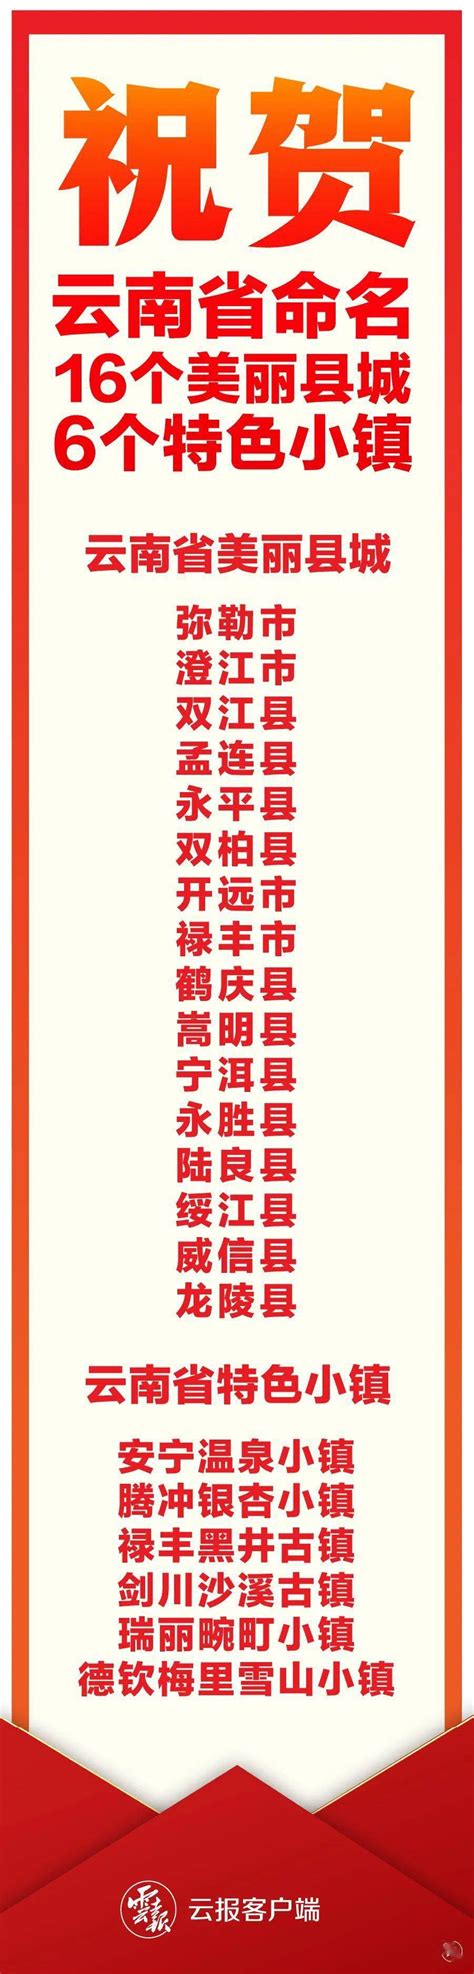 云南4A级景区名单排行榜-排行榜123网